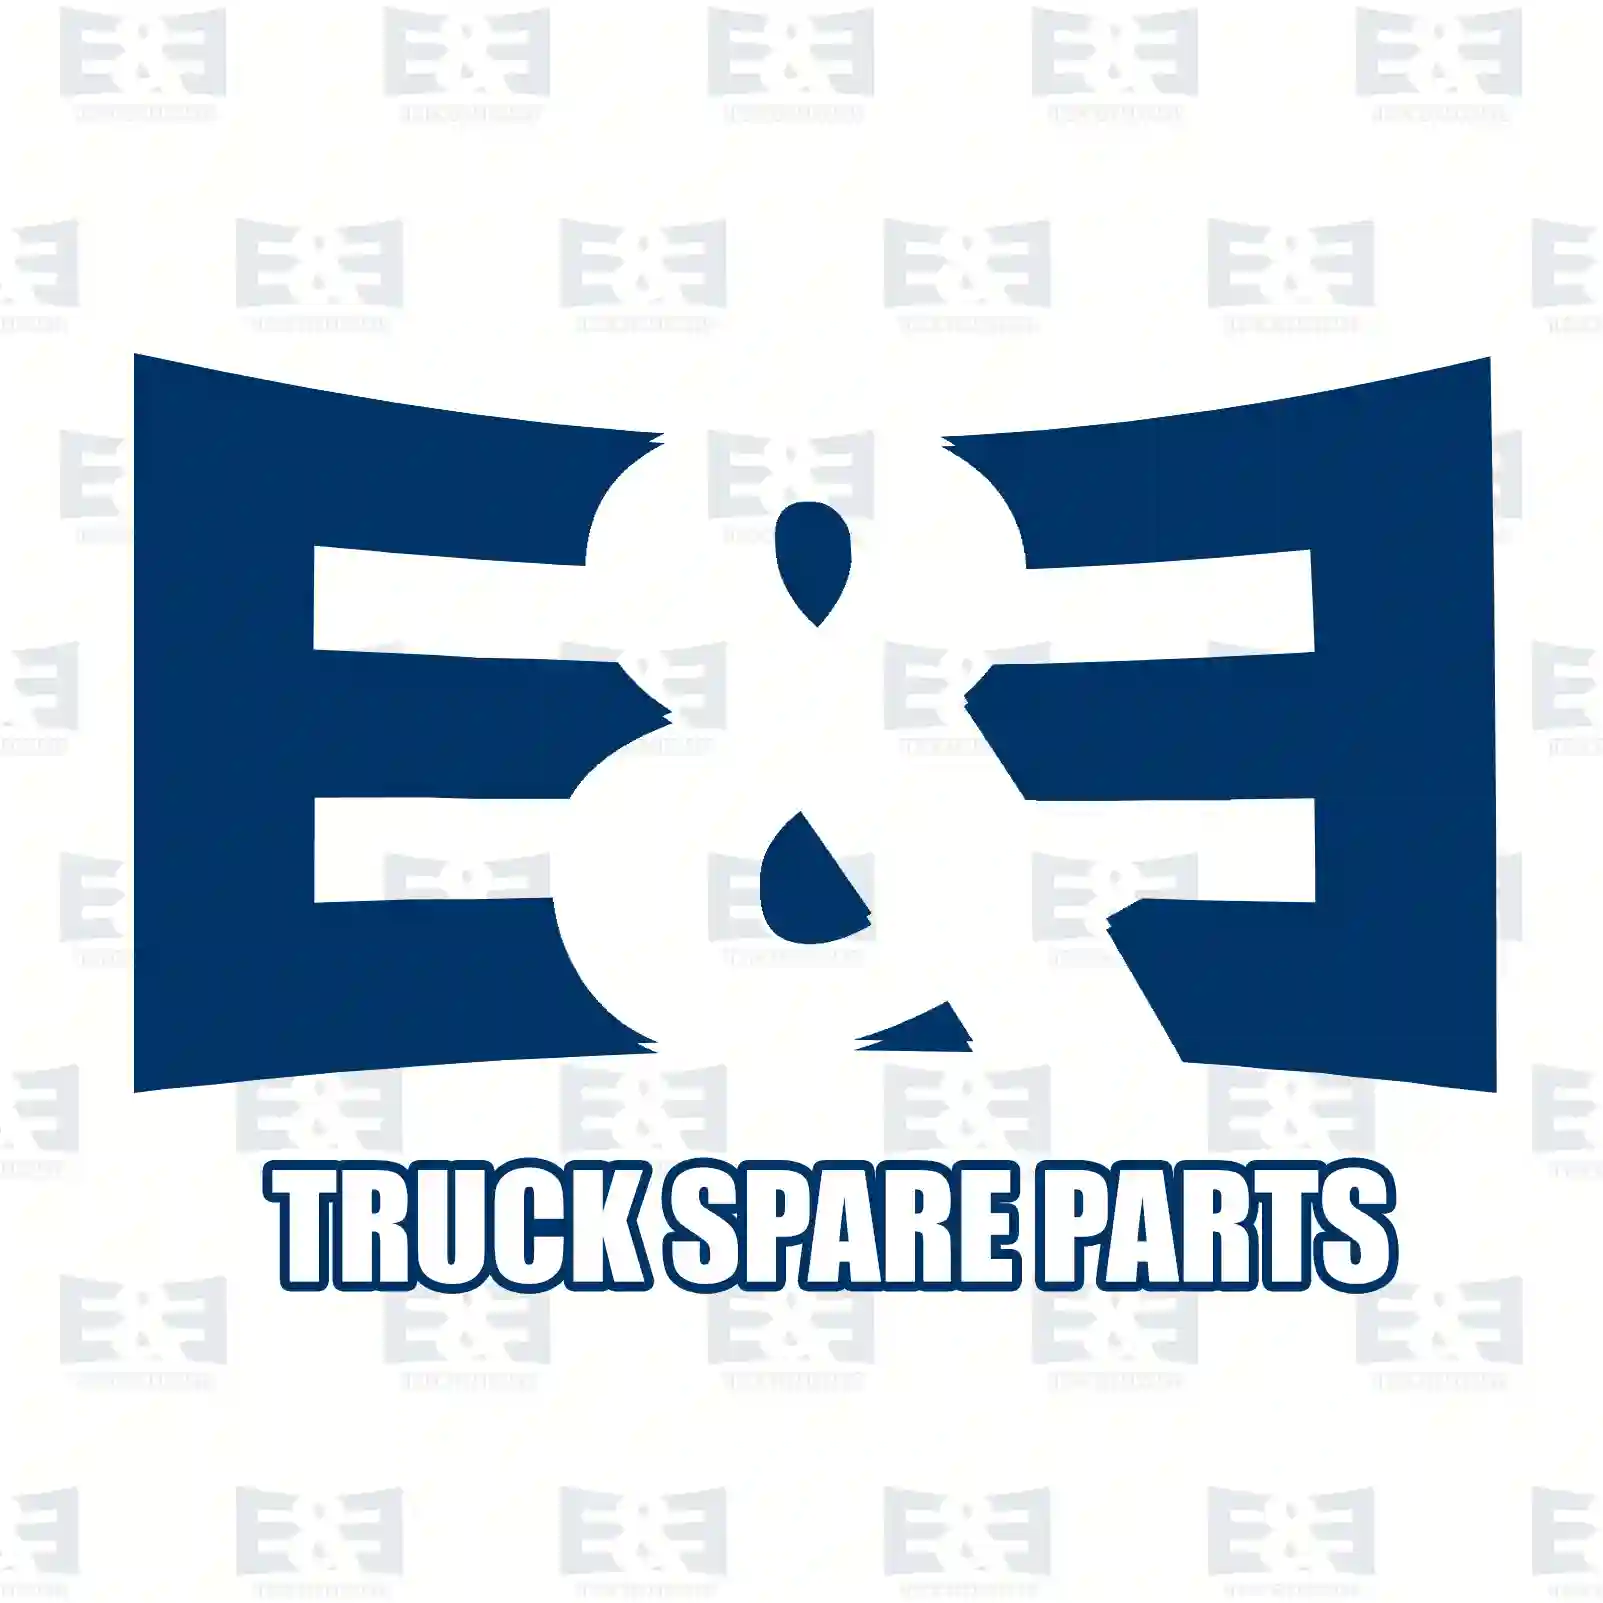 Gasket, 2E2202660, 04852099, 4852099, 99456733 ||  2E2202660 E&E Truck Spare Parts | Truck Spare Parts, Auotomotive Spare Parts Gasket, 2E2202660, 04852099, 4852099, 99456733 ||  2E2202660 E&E Truck Spare Parts | Truck Spare Parts, Auotomotive Spare Parts